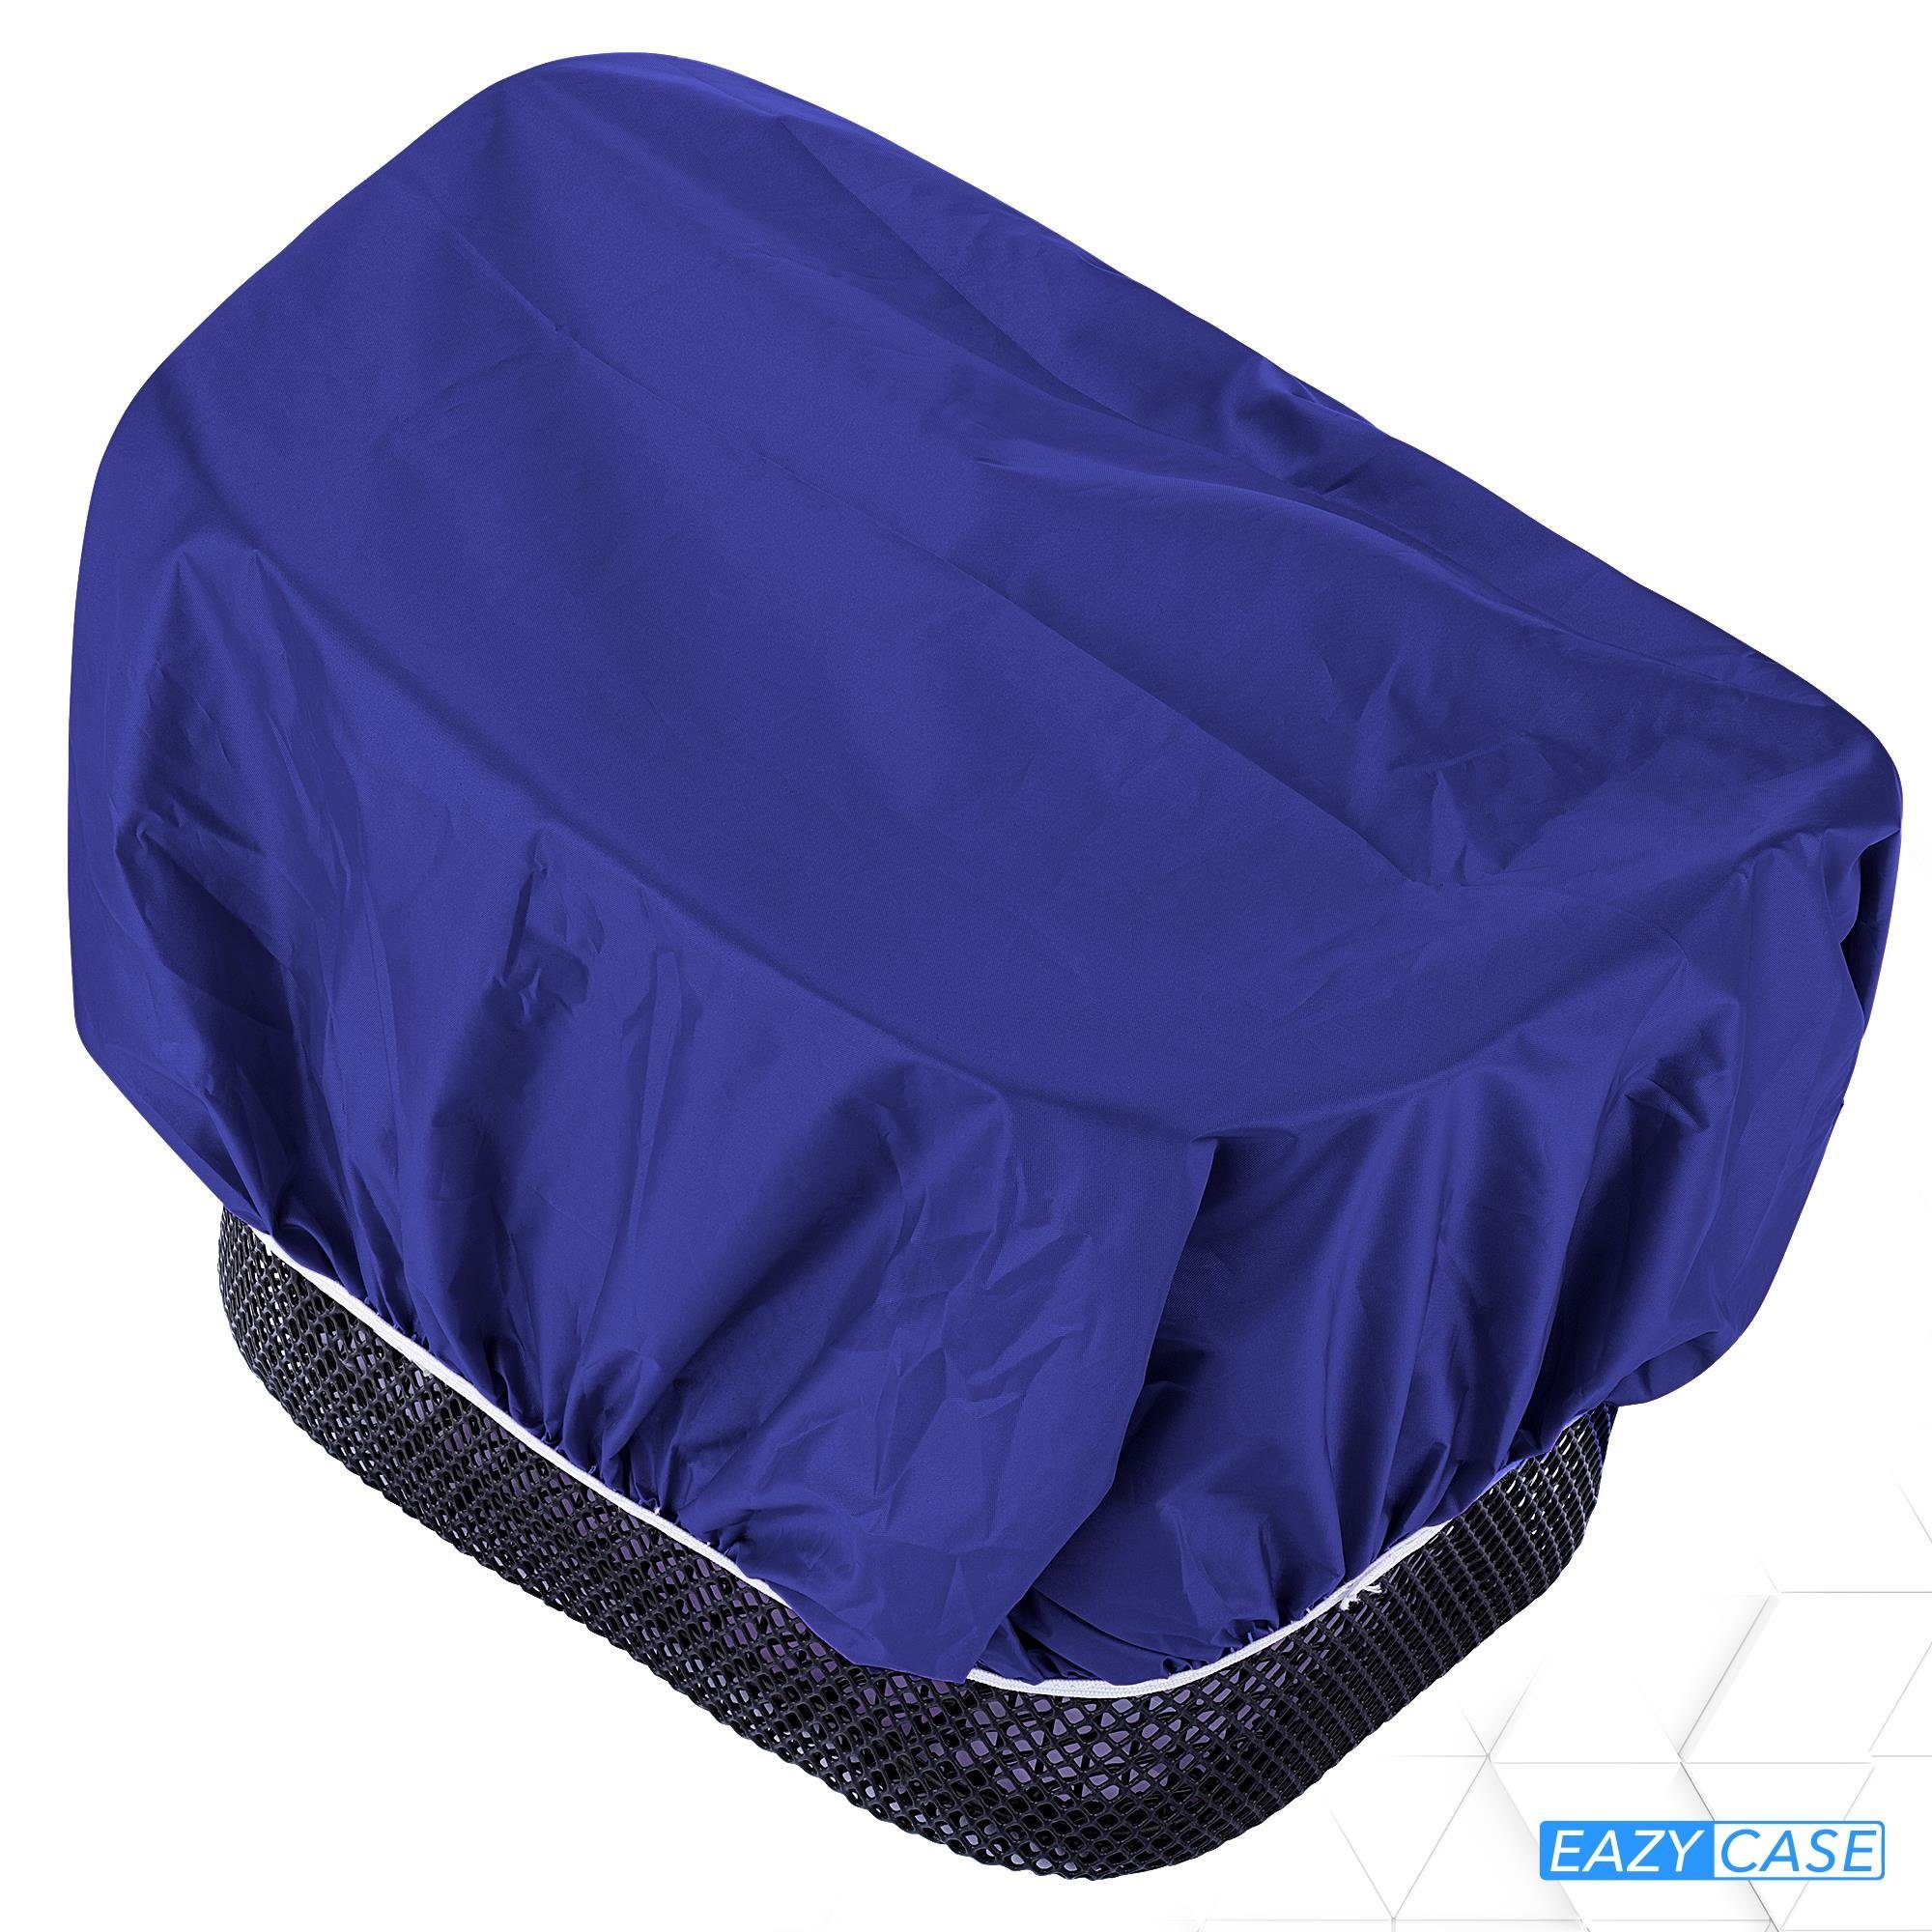 Blau Fahrradkorb für Korb, wasserabweisend Körbe EAZY Korbüberzug CASE für Regenschutz Fahrradkorb Regenhülle Universal